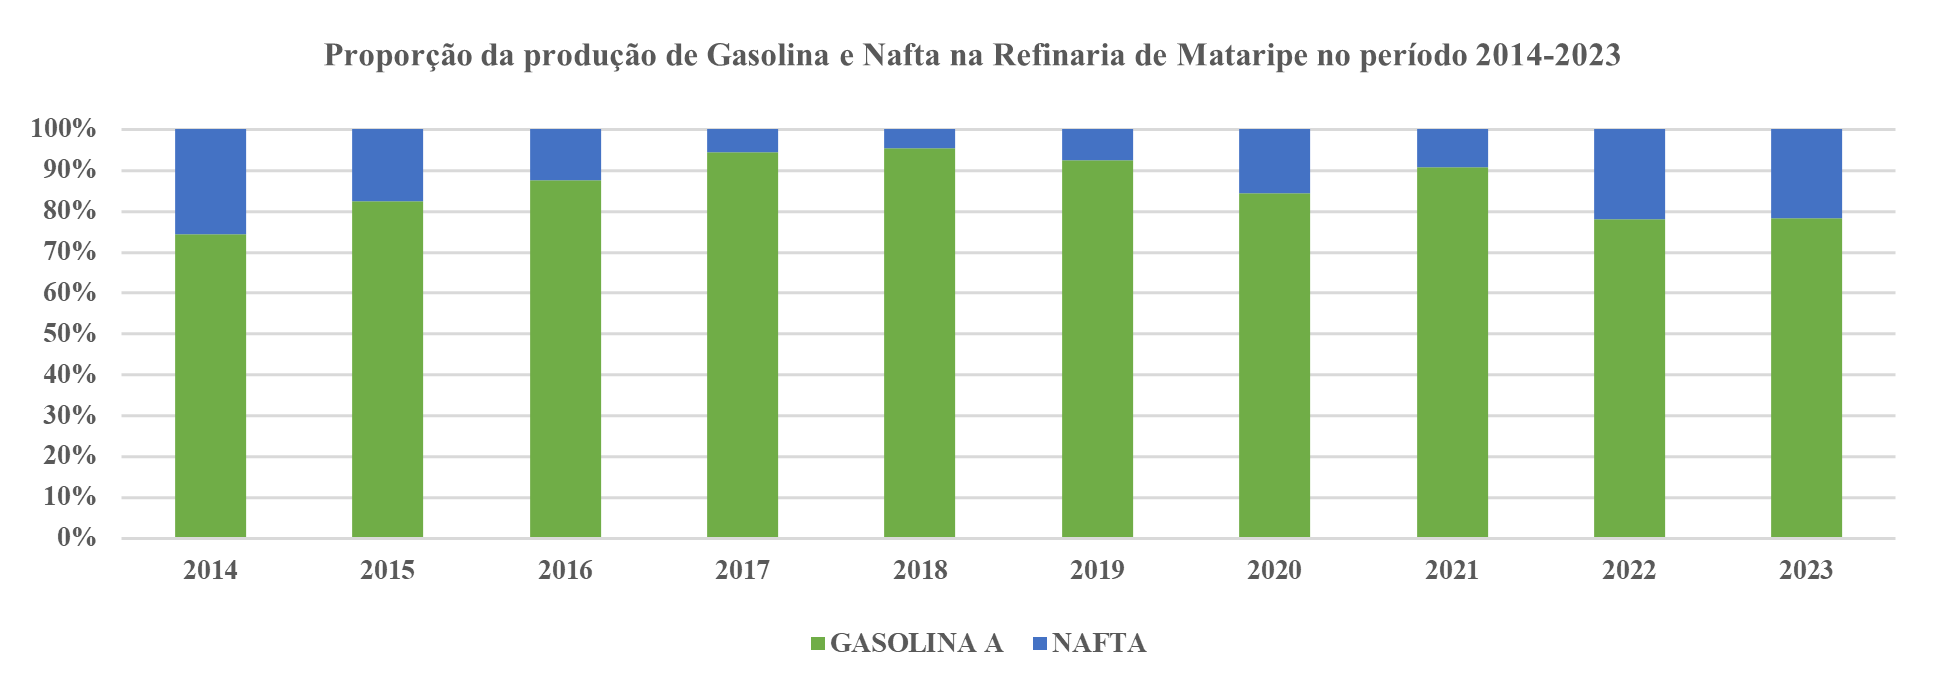 Gráfico da produção de gasolina e nafta na REFMAT entre 2014 e 2023.